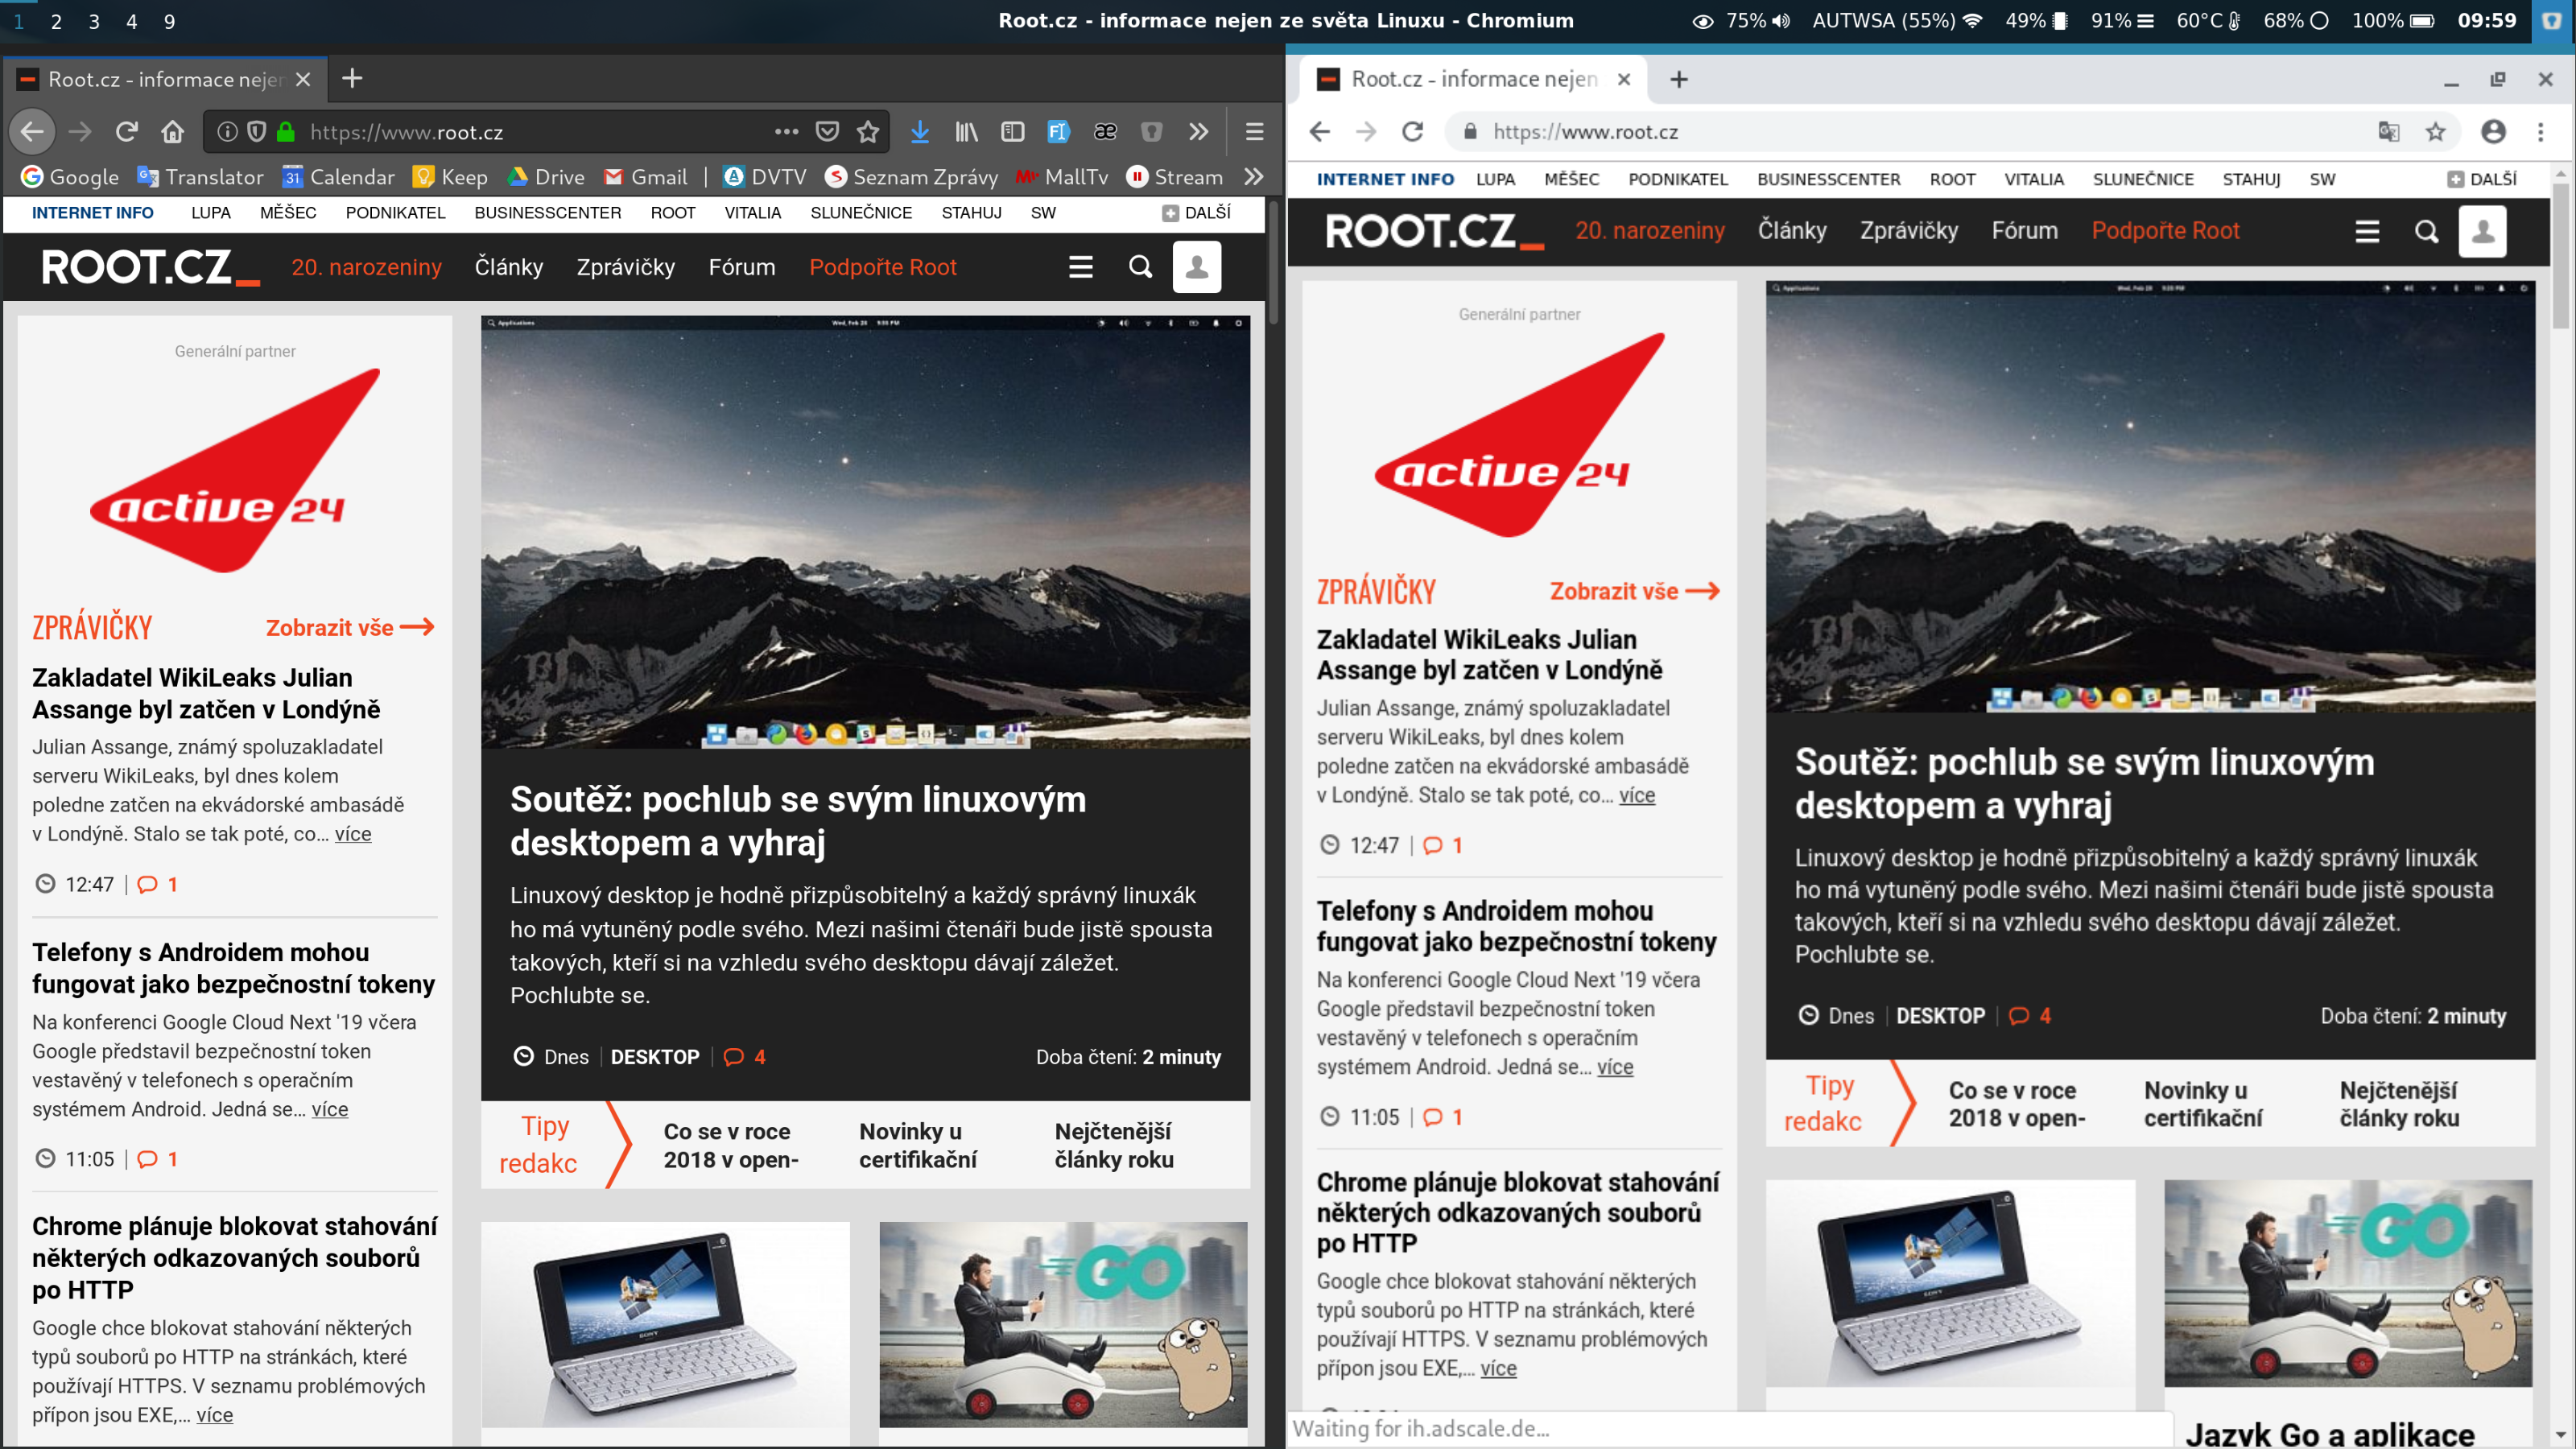 Vlevo je Firefox v66.0.2 využívající protokol Wayland, vpravo je pak Chromium 73.0.3683.86 běžící na XWaylandu.